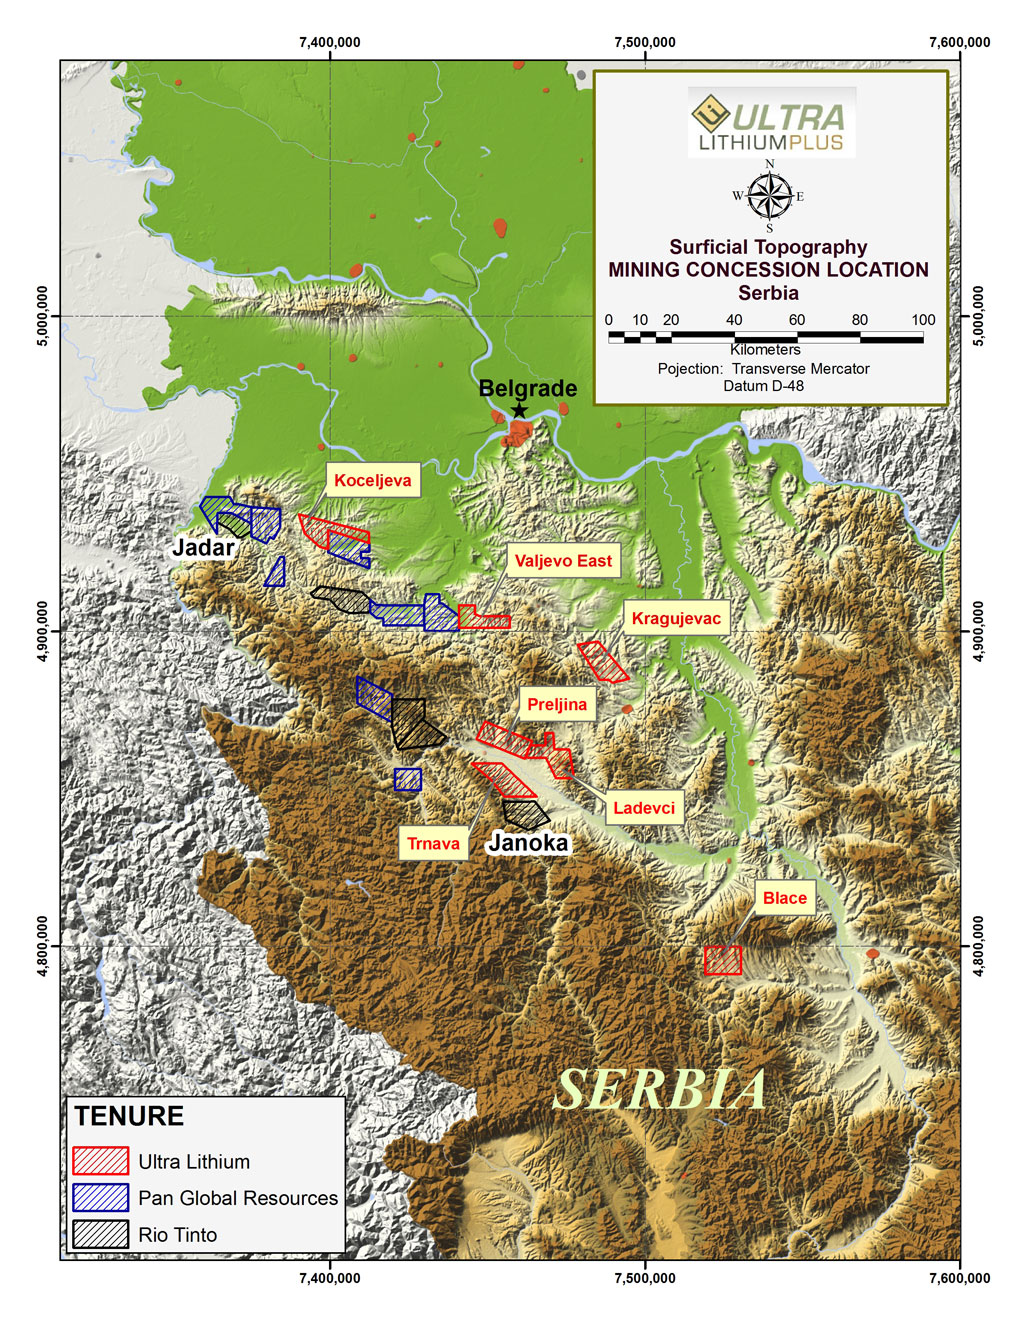 Пројекат "Јадар" или српски евро-атлантски економски ИДИОТИЗАМ: Како предати светско тржиште литијума и бора мултинационалу за 2% рудне ренте